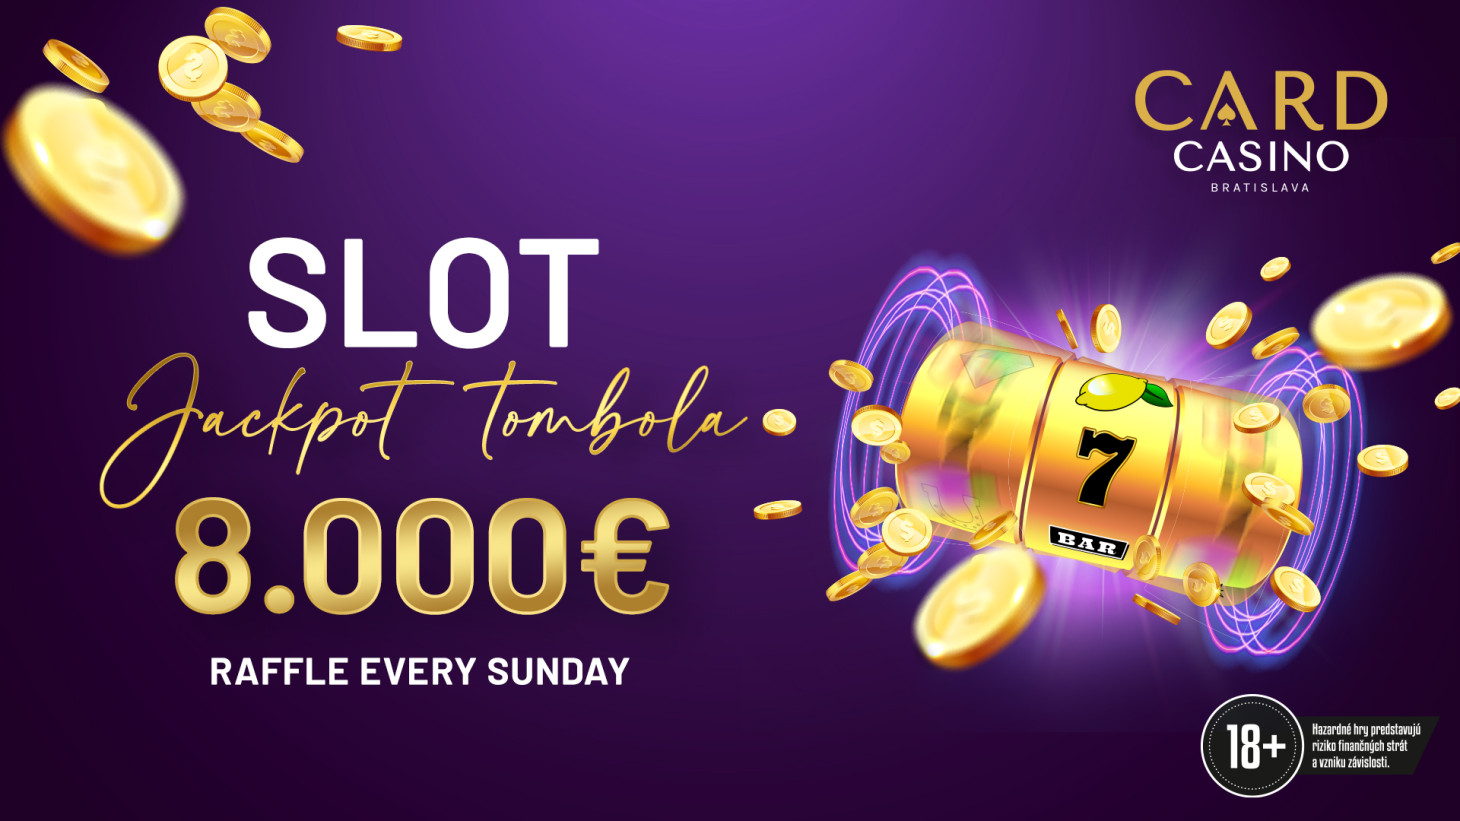 Sundays full of money. The Slot Jackpot Tombola for €8,000 awaits you!